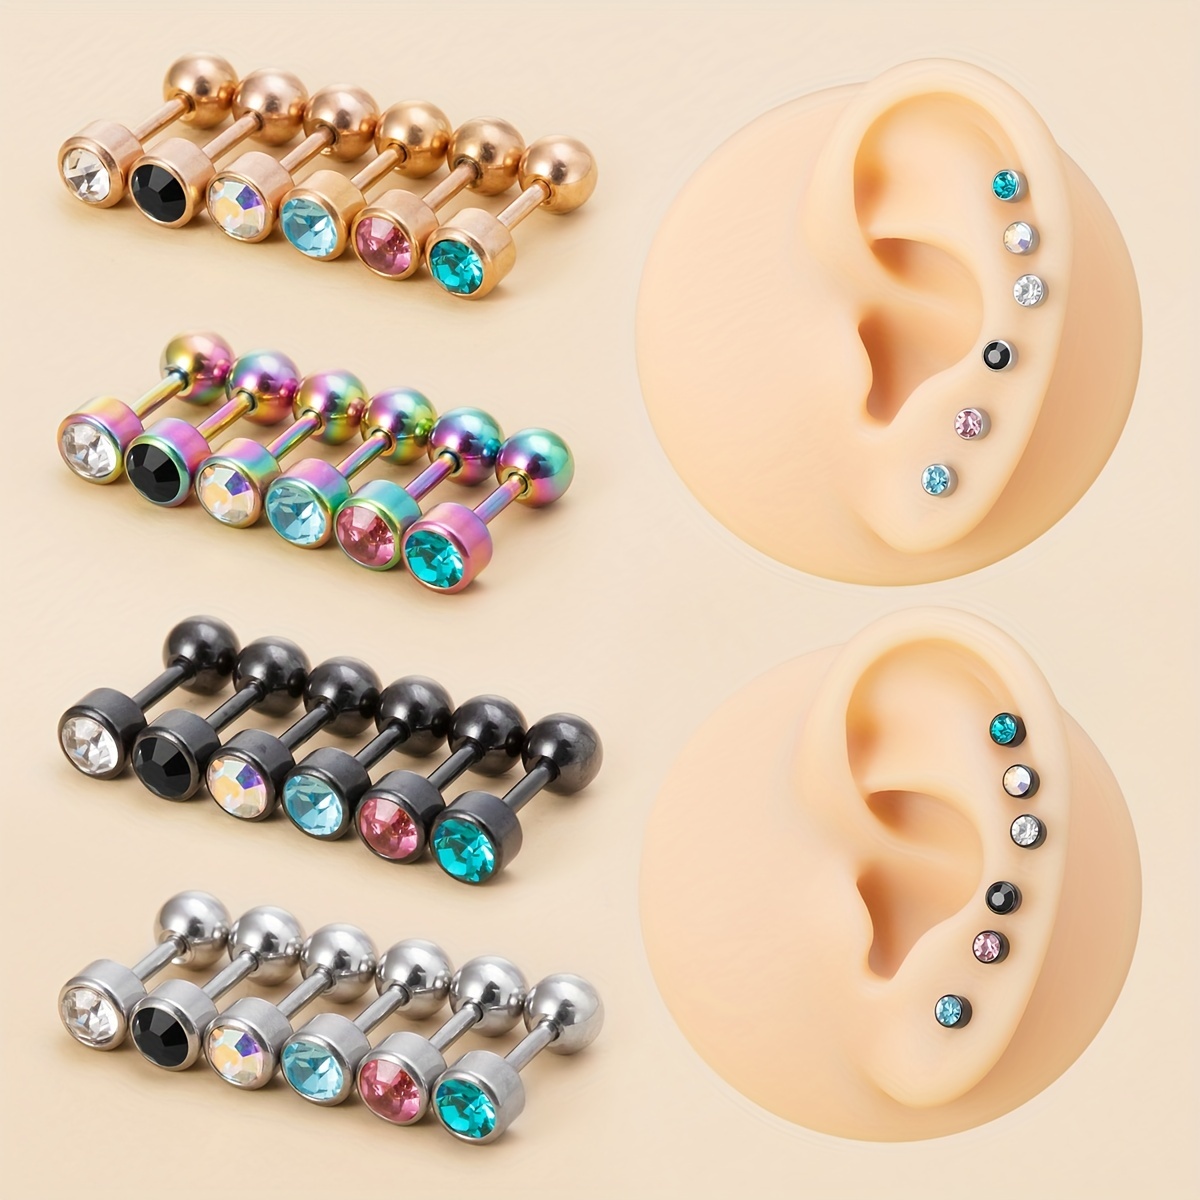 Pierced earring backs-4 types